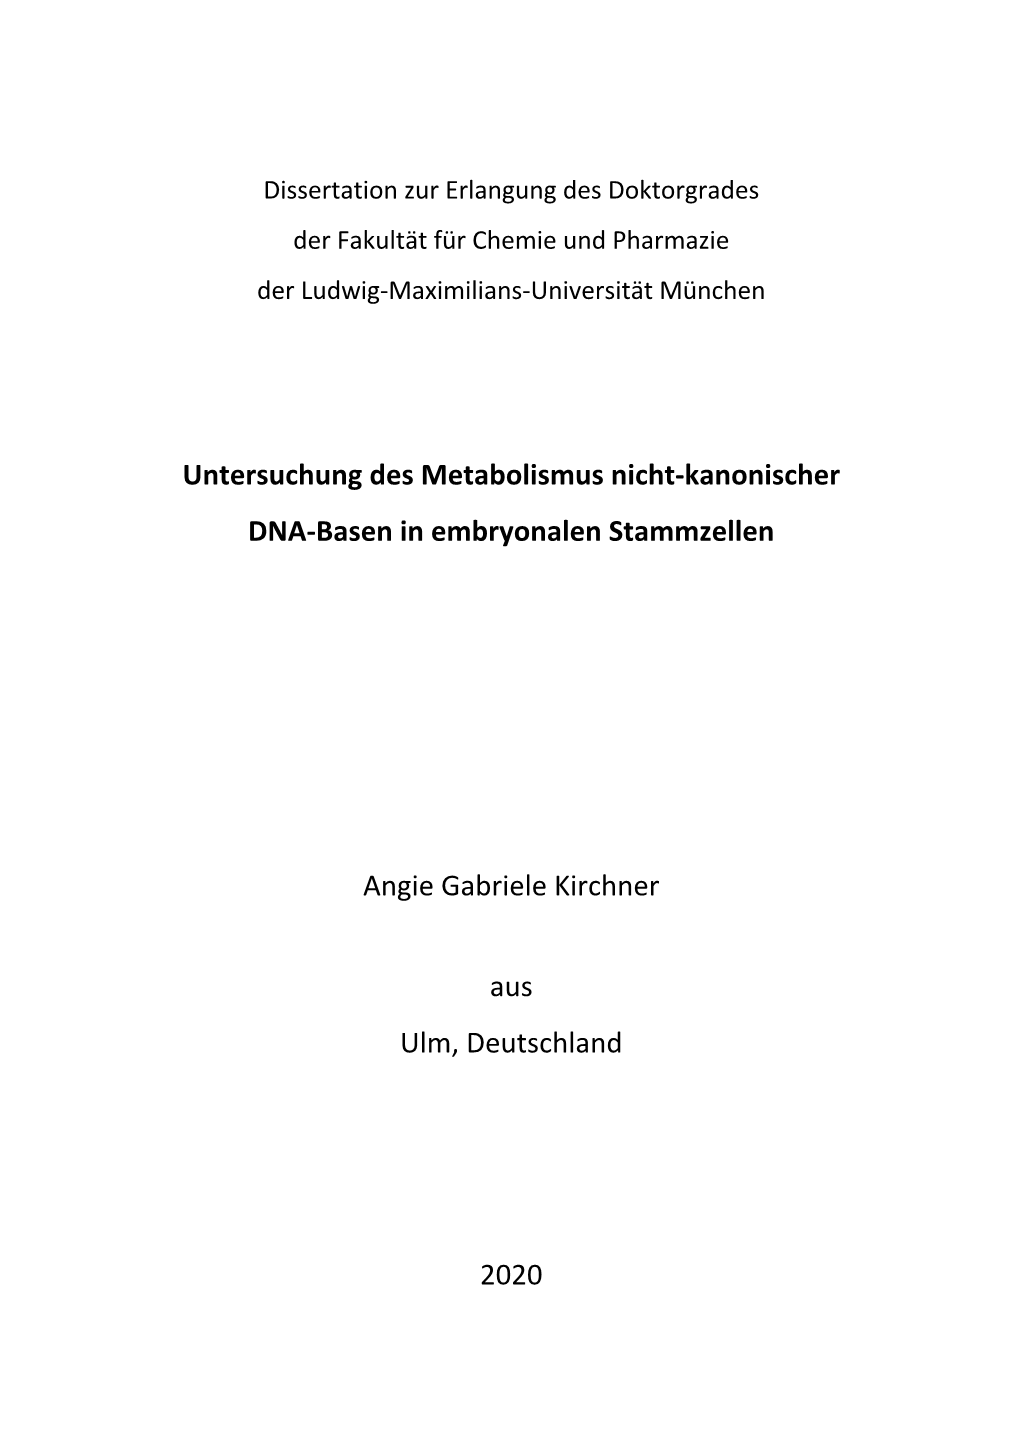 Untersuchung Des Metabolismus Nicht-Kanonischer DNA-Basen In